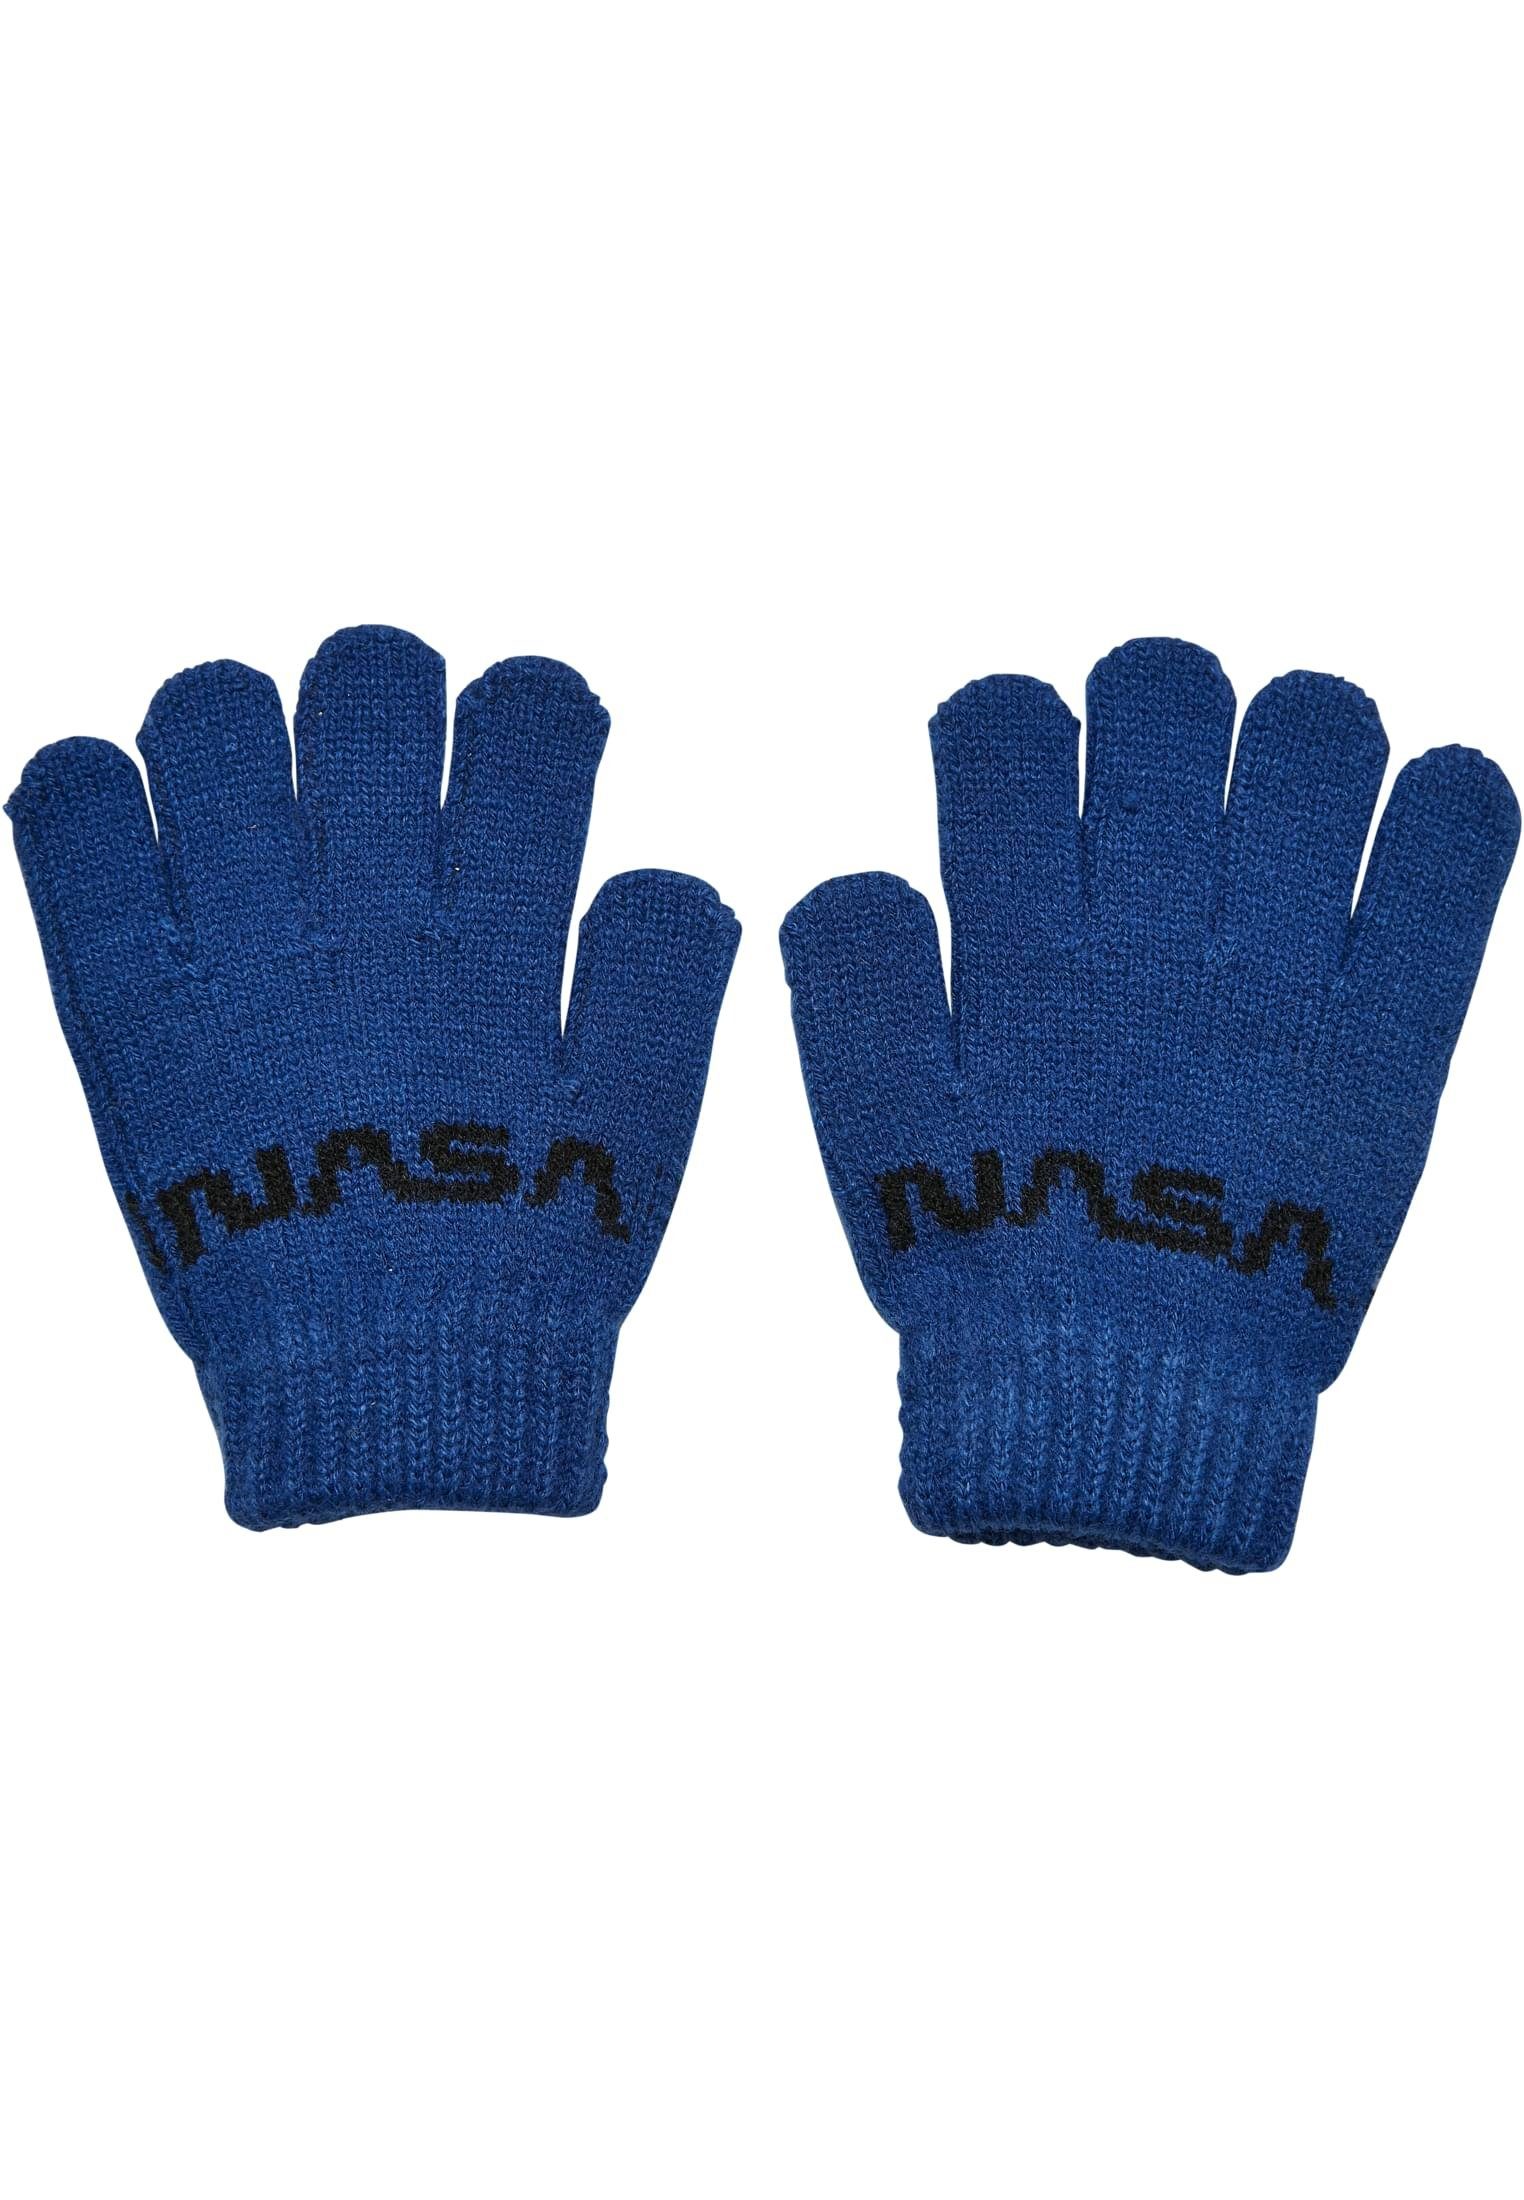 MisterTee Baumwollhandschuhe Accessoires NASA Knit Glove Kids royal | Handschuhe